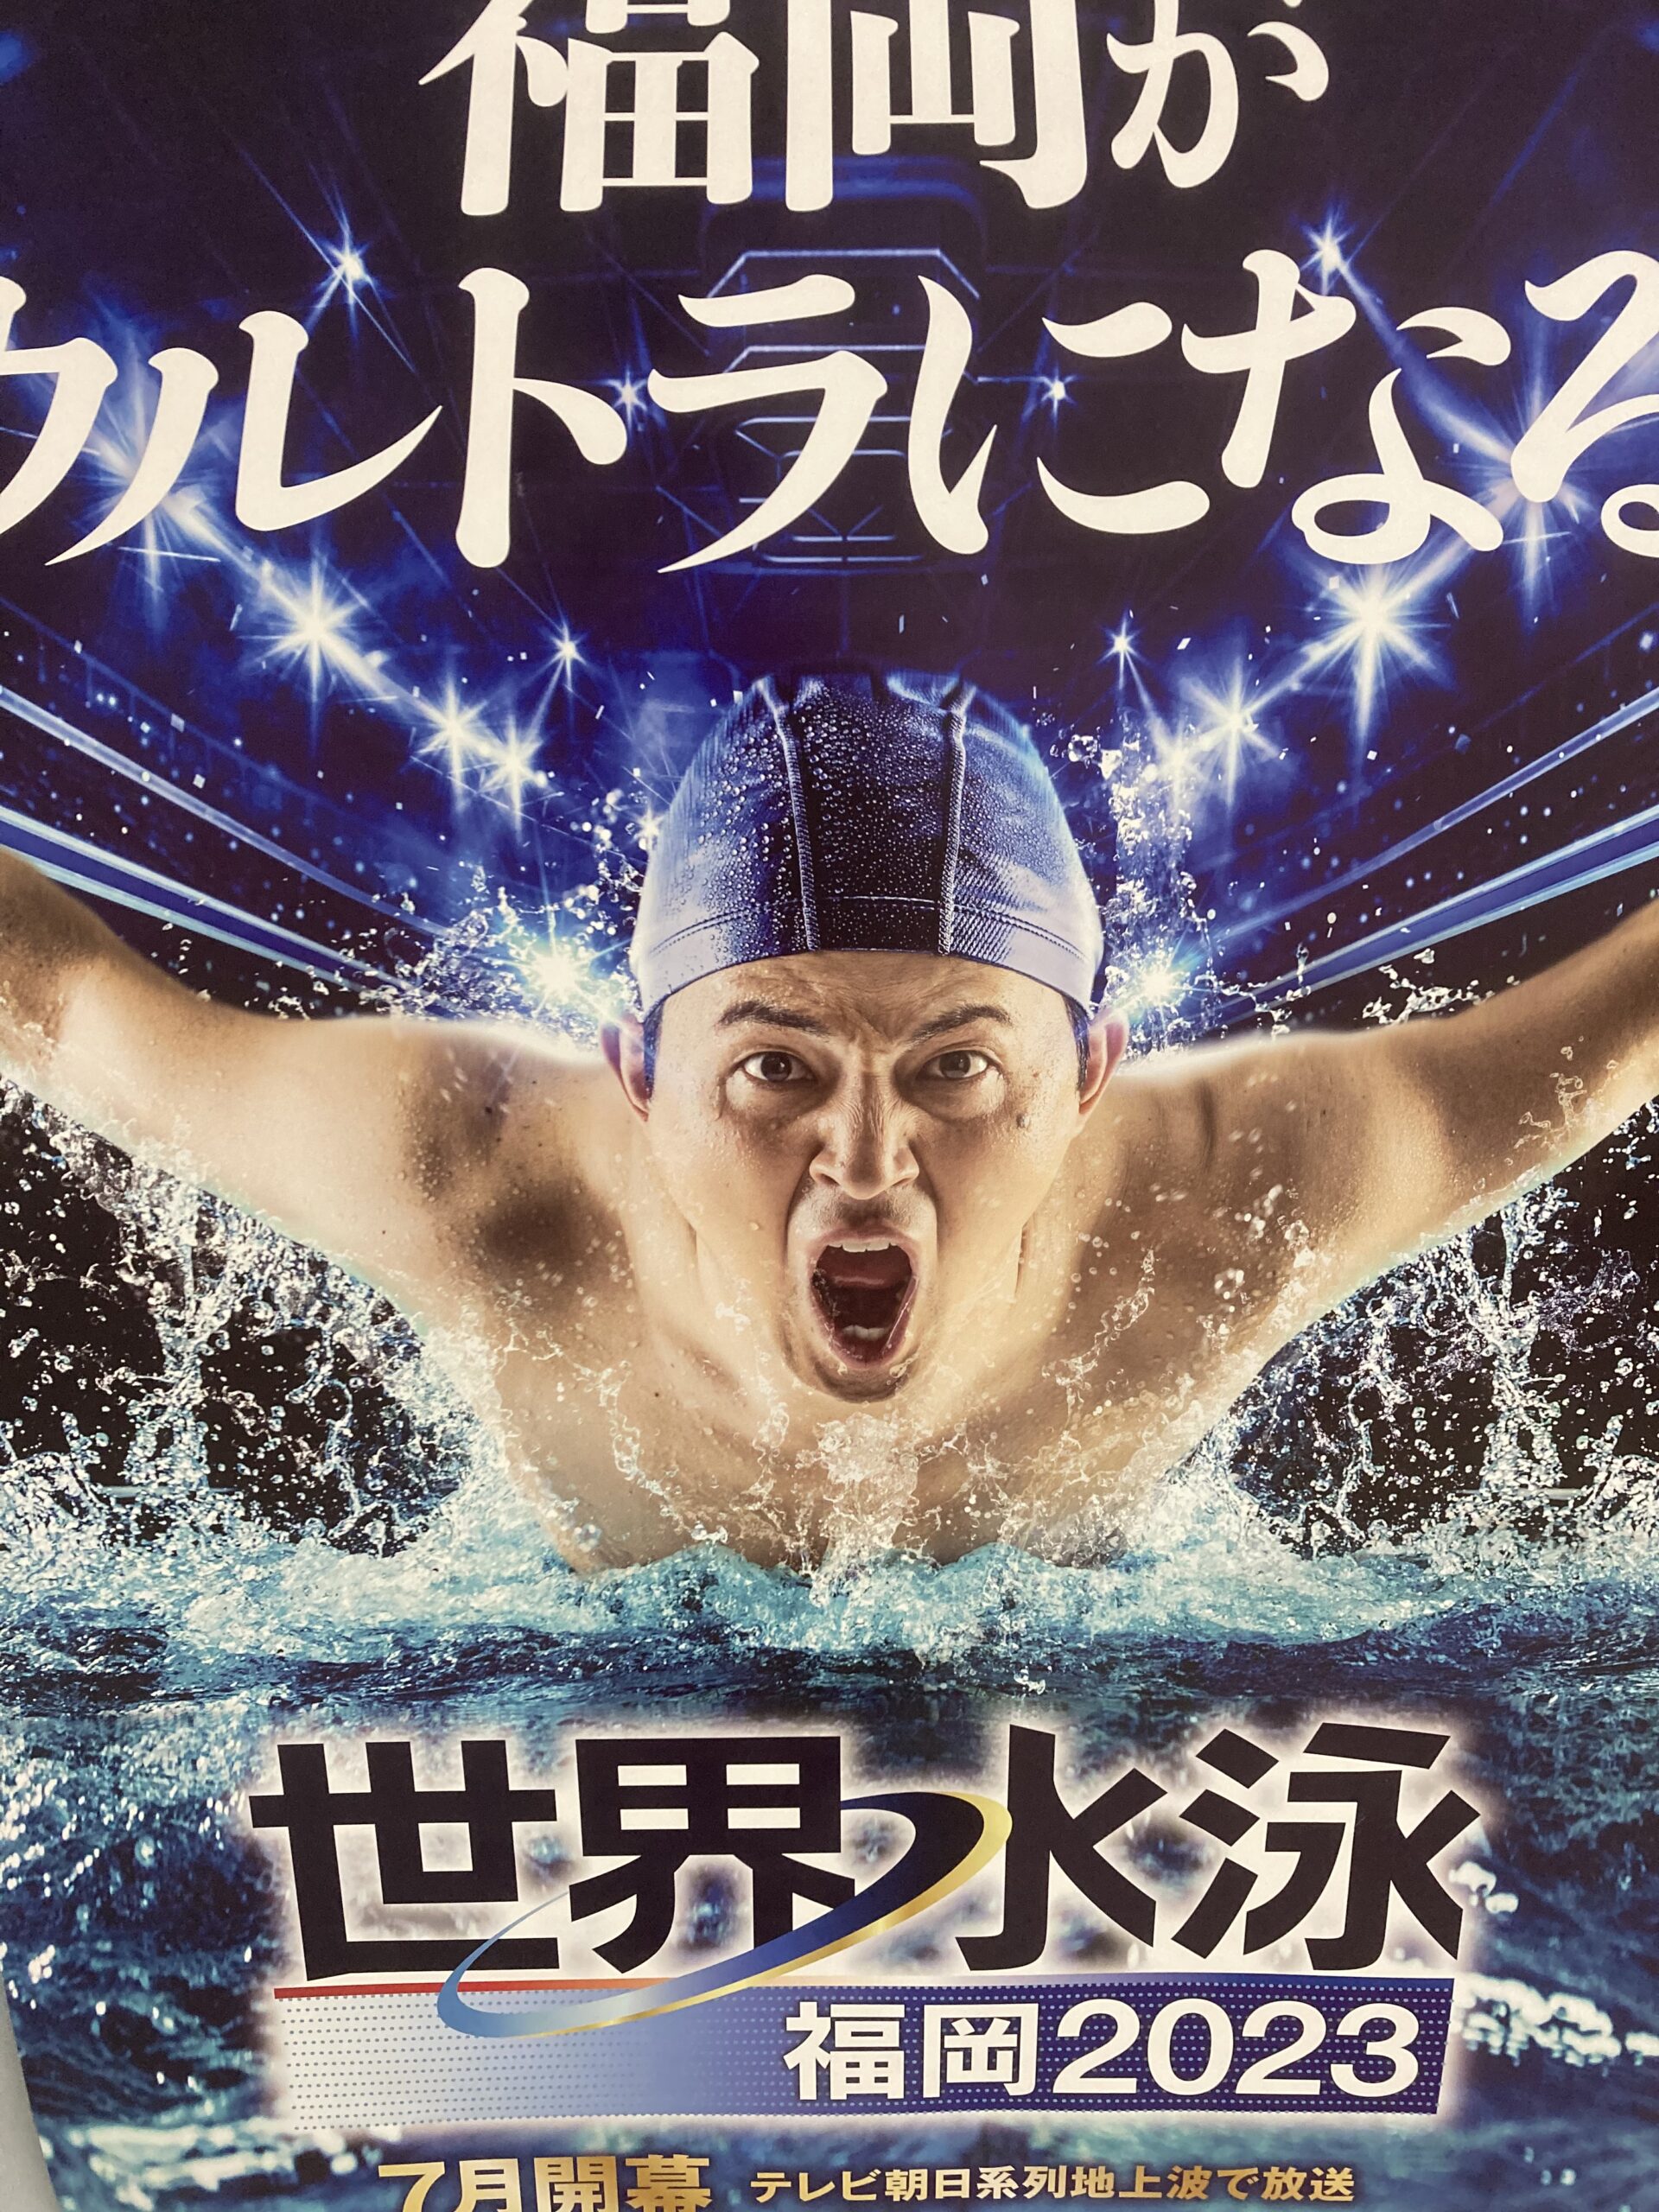 世界水泳選手権 2023 福岡大会 競泳 決勝 7/29 20:00開始 - その他